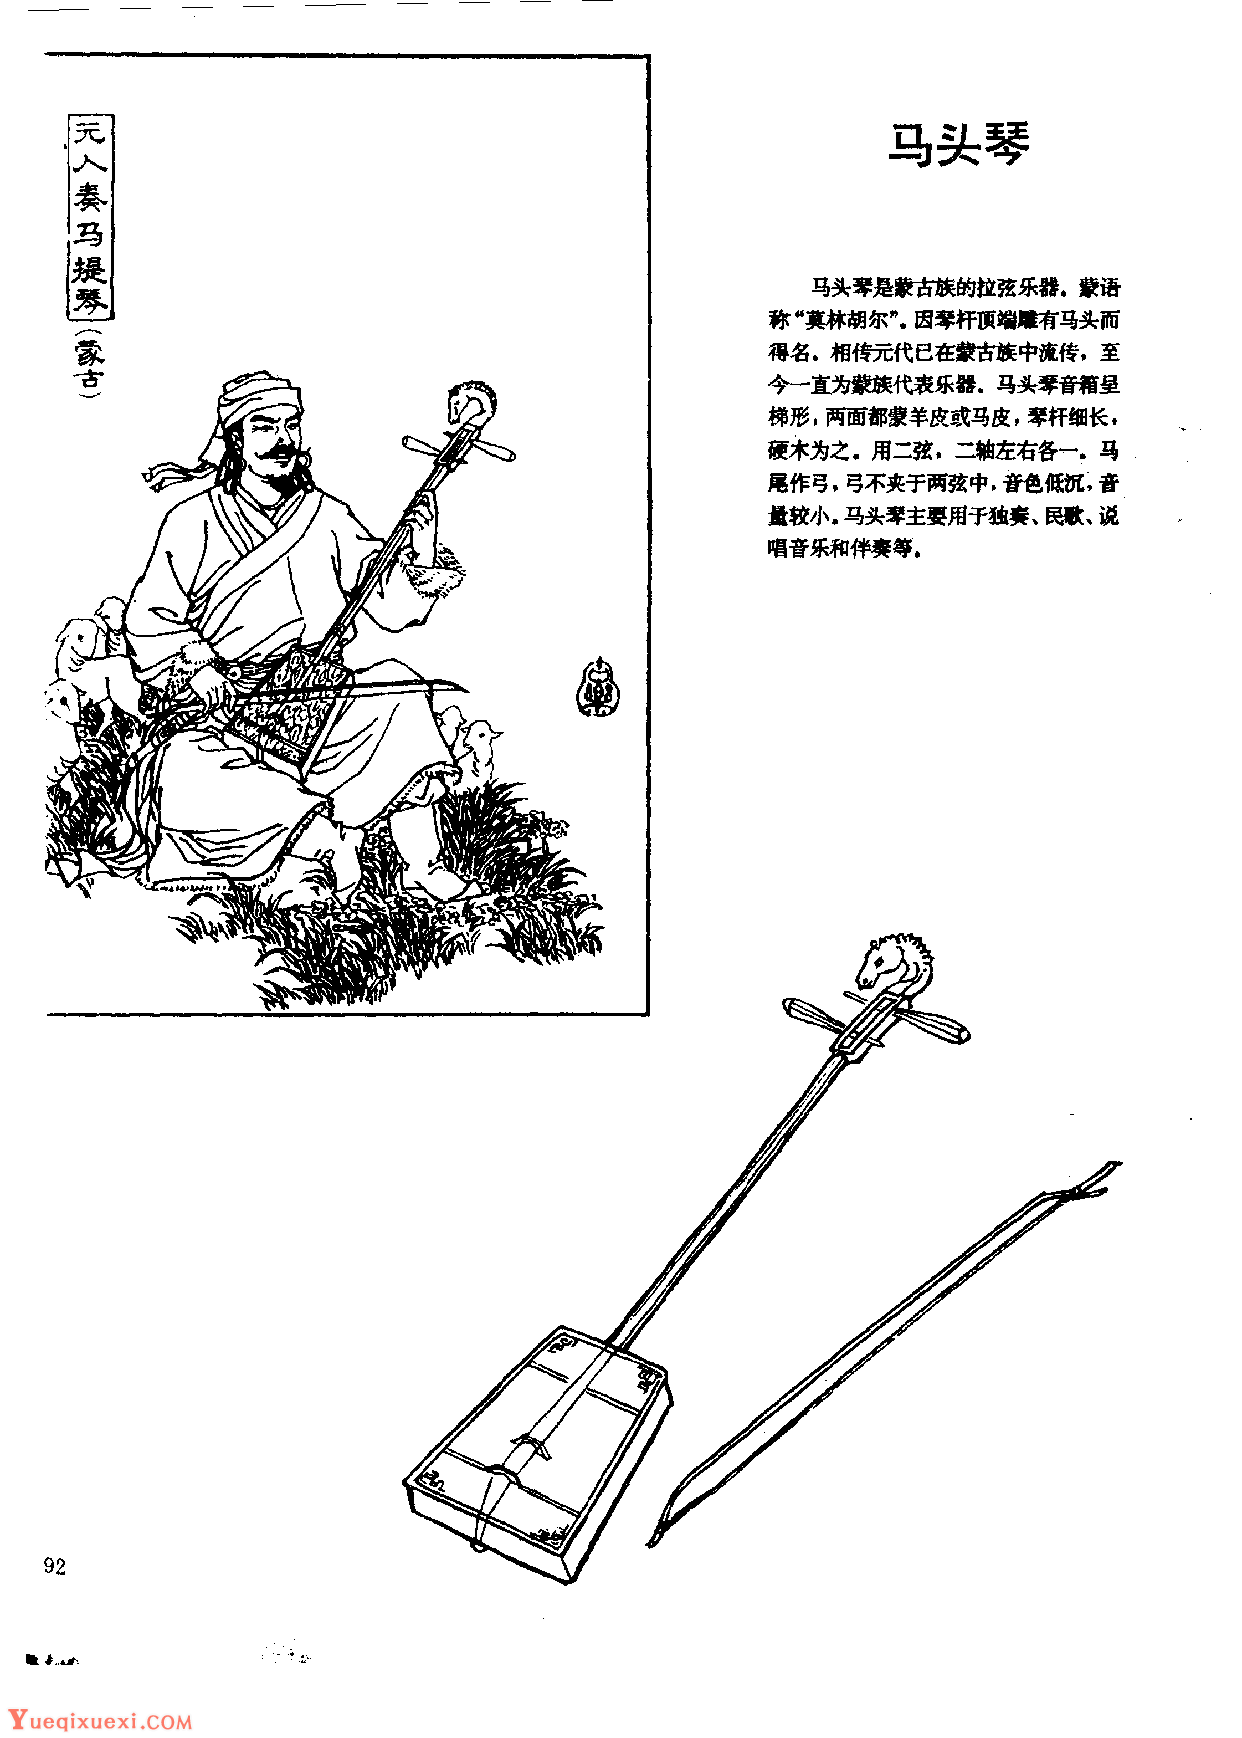 中国古代乐器《马头琴》